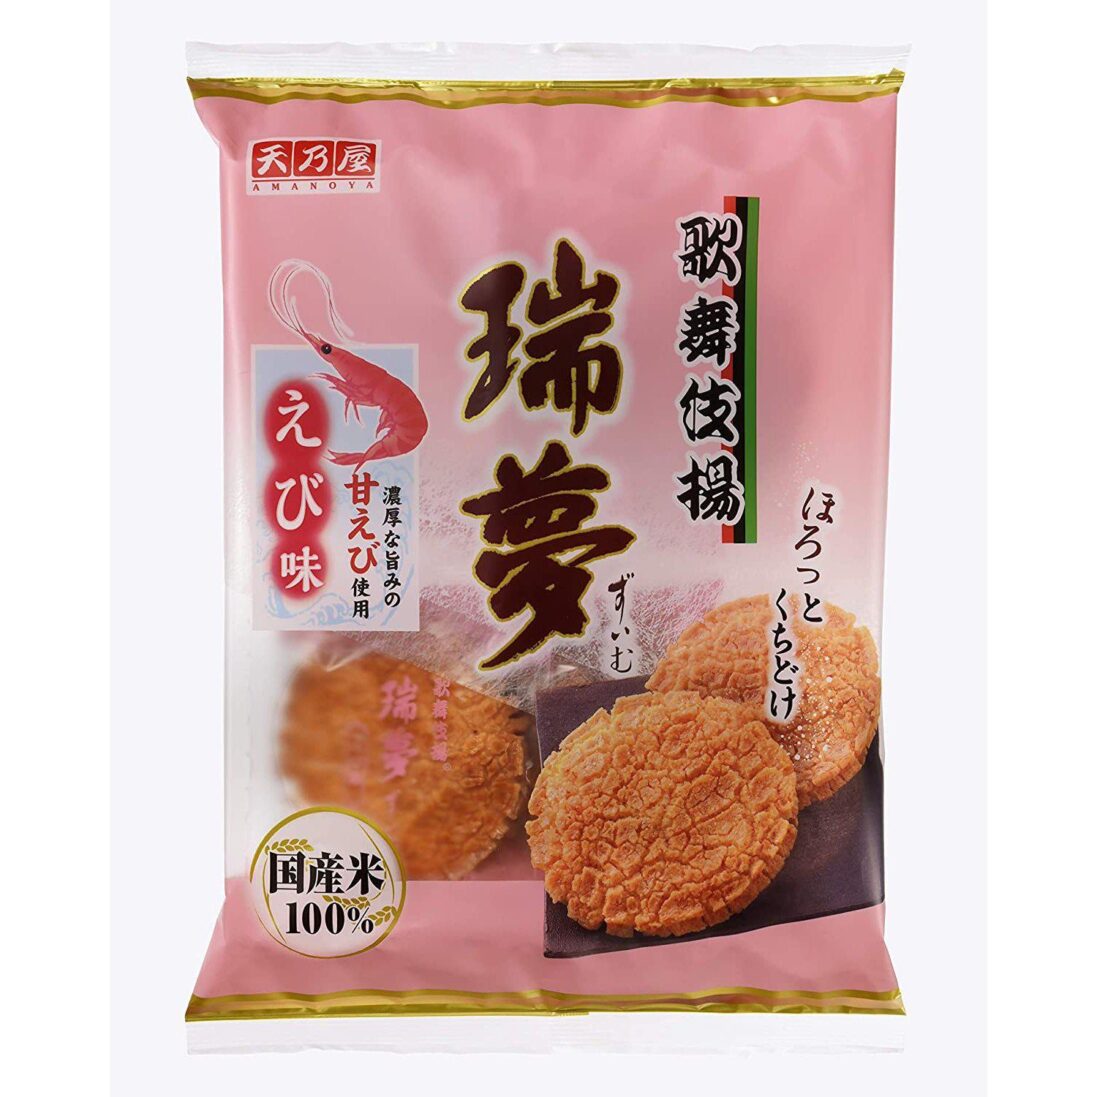 Amanoya Kabukiage Zuimu Shrimp Rice Crackers 8 Pieces